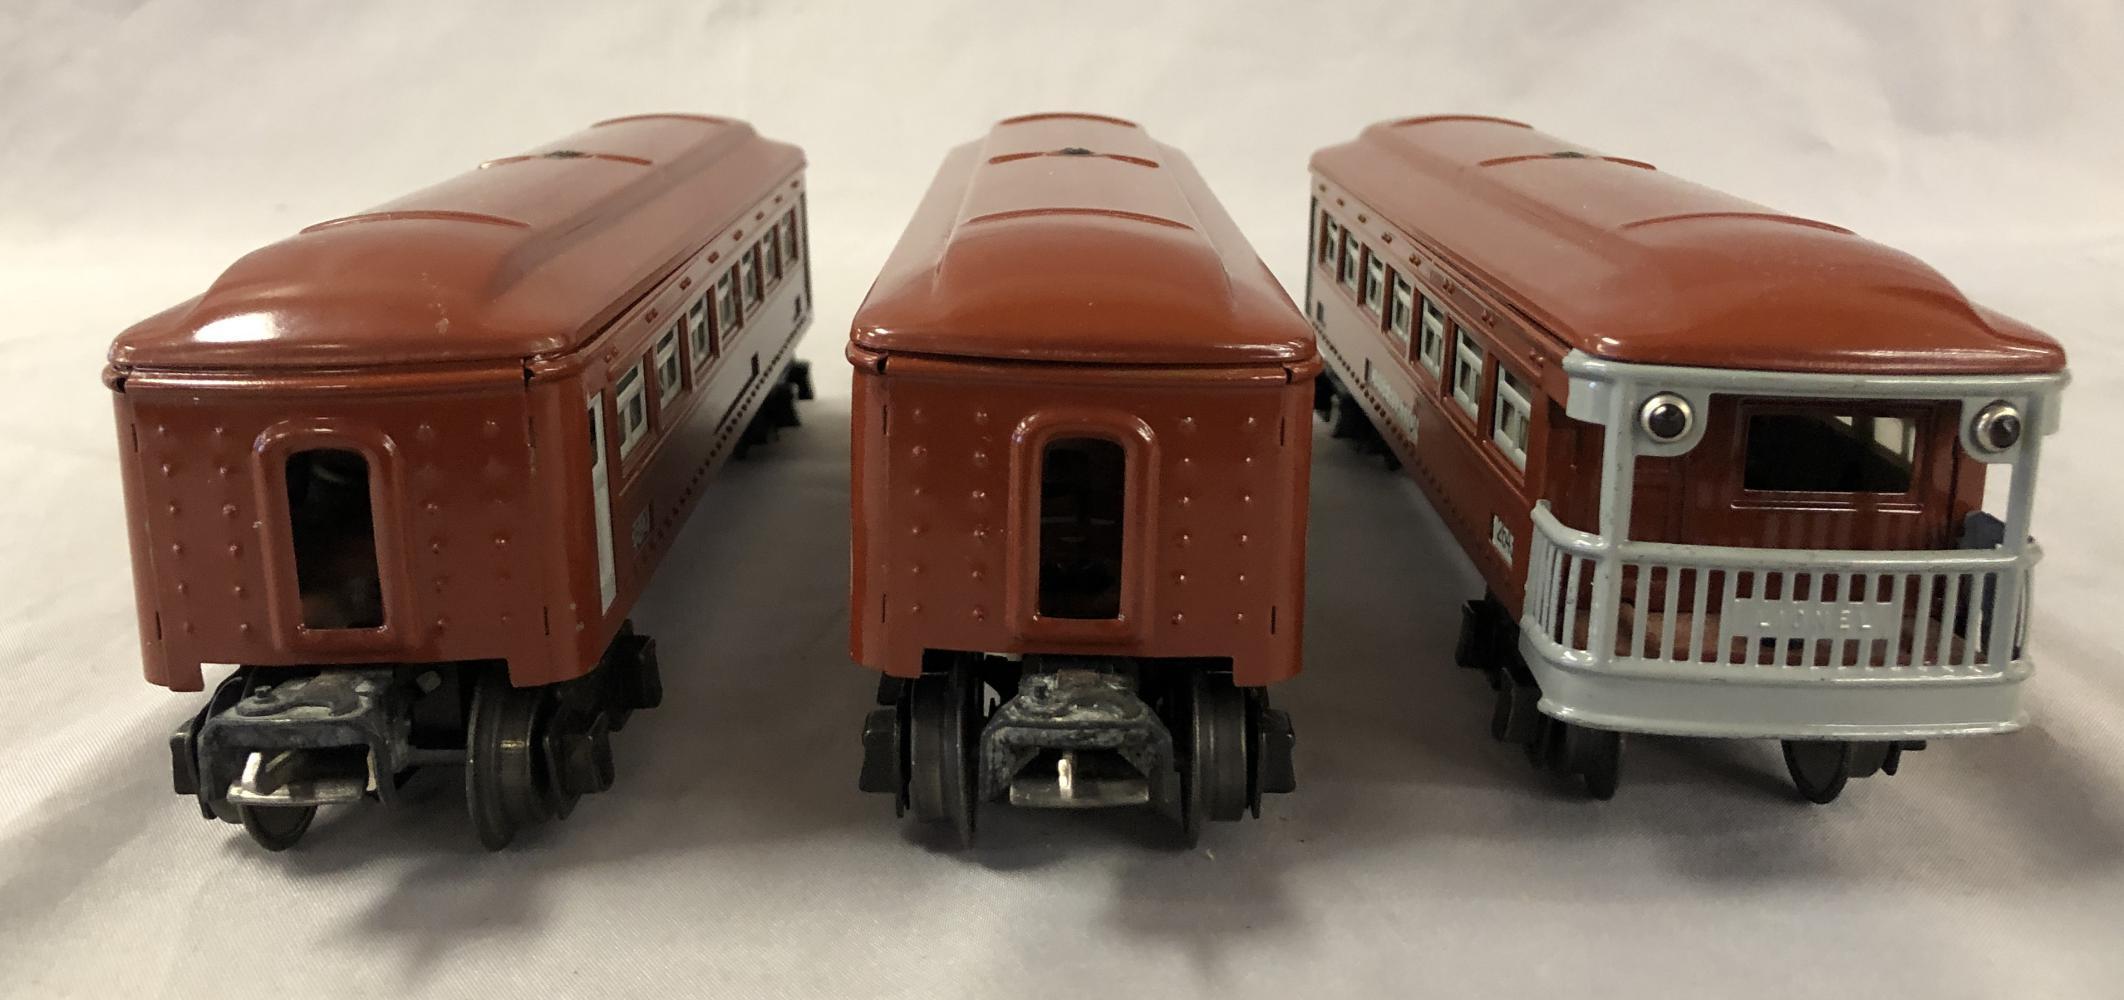 3 LN Boxed Lionel 2640 Passenger Cars